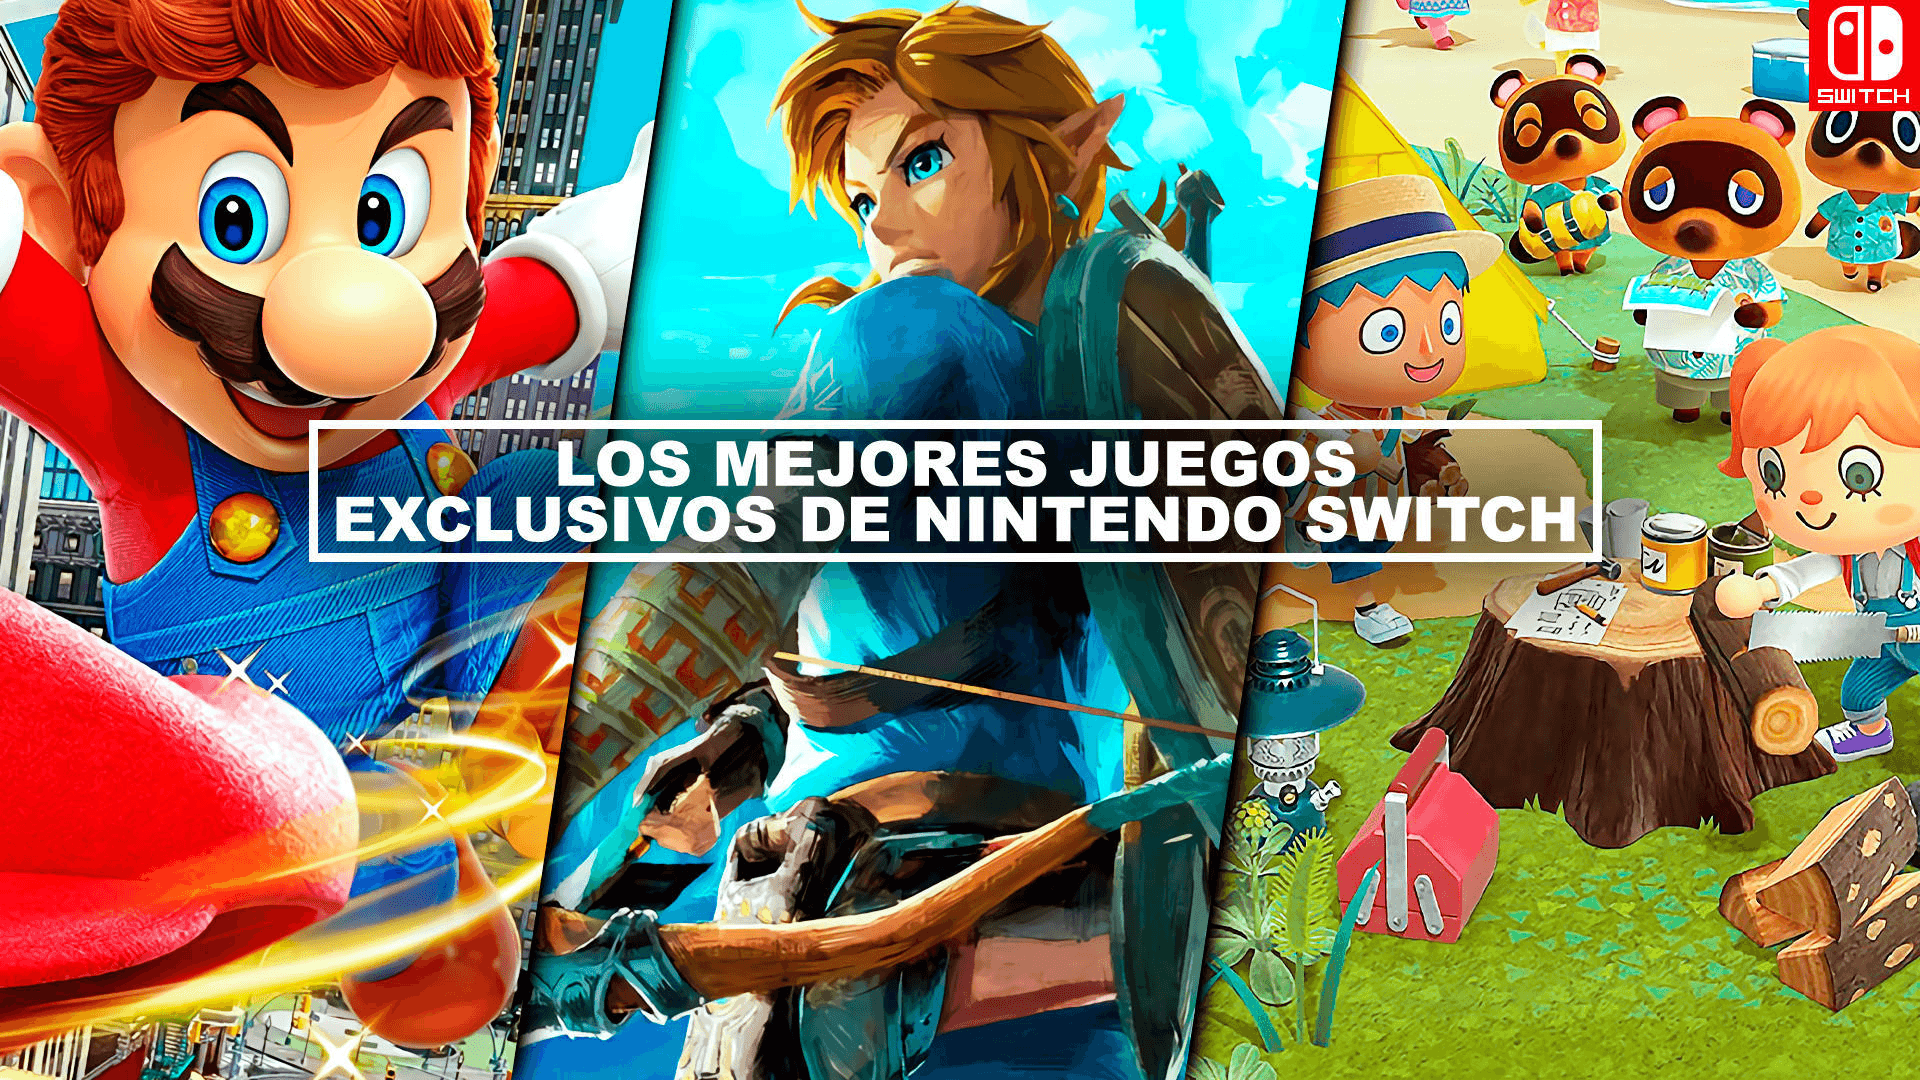 Los mejores juegos exclusivos de Nintendo Switch.